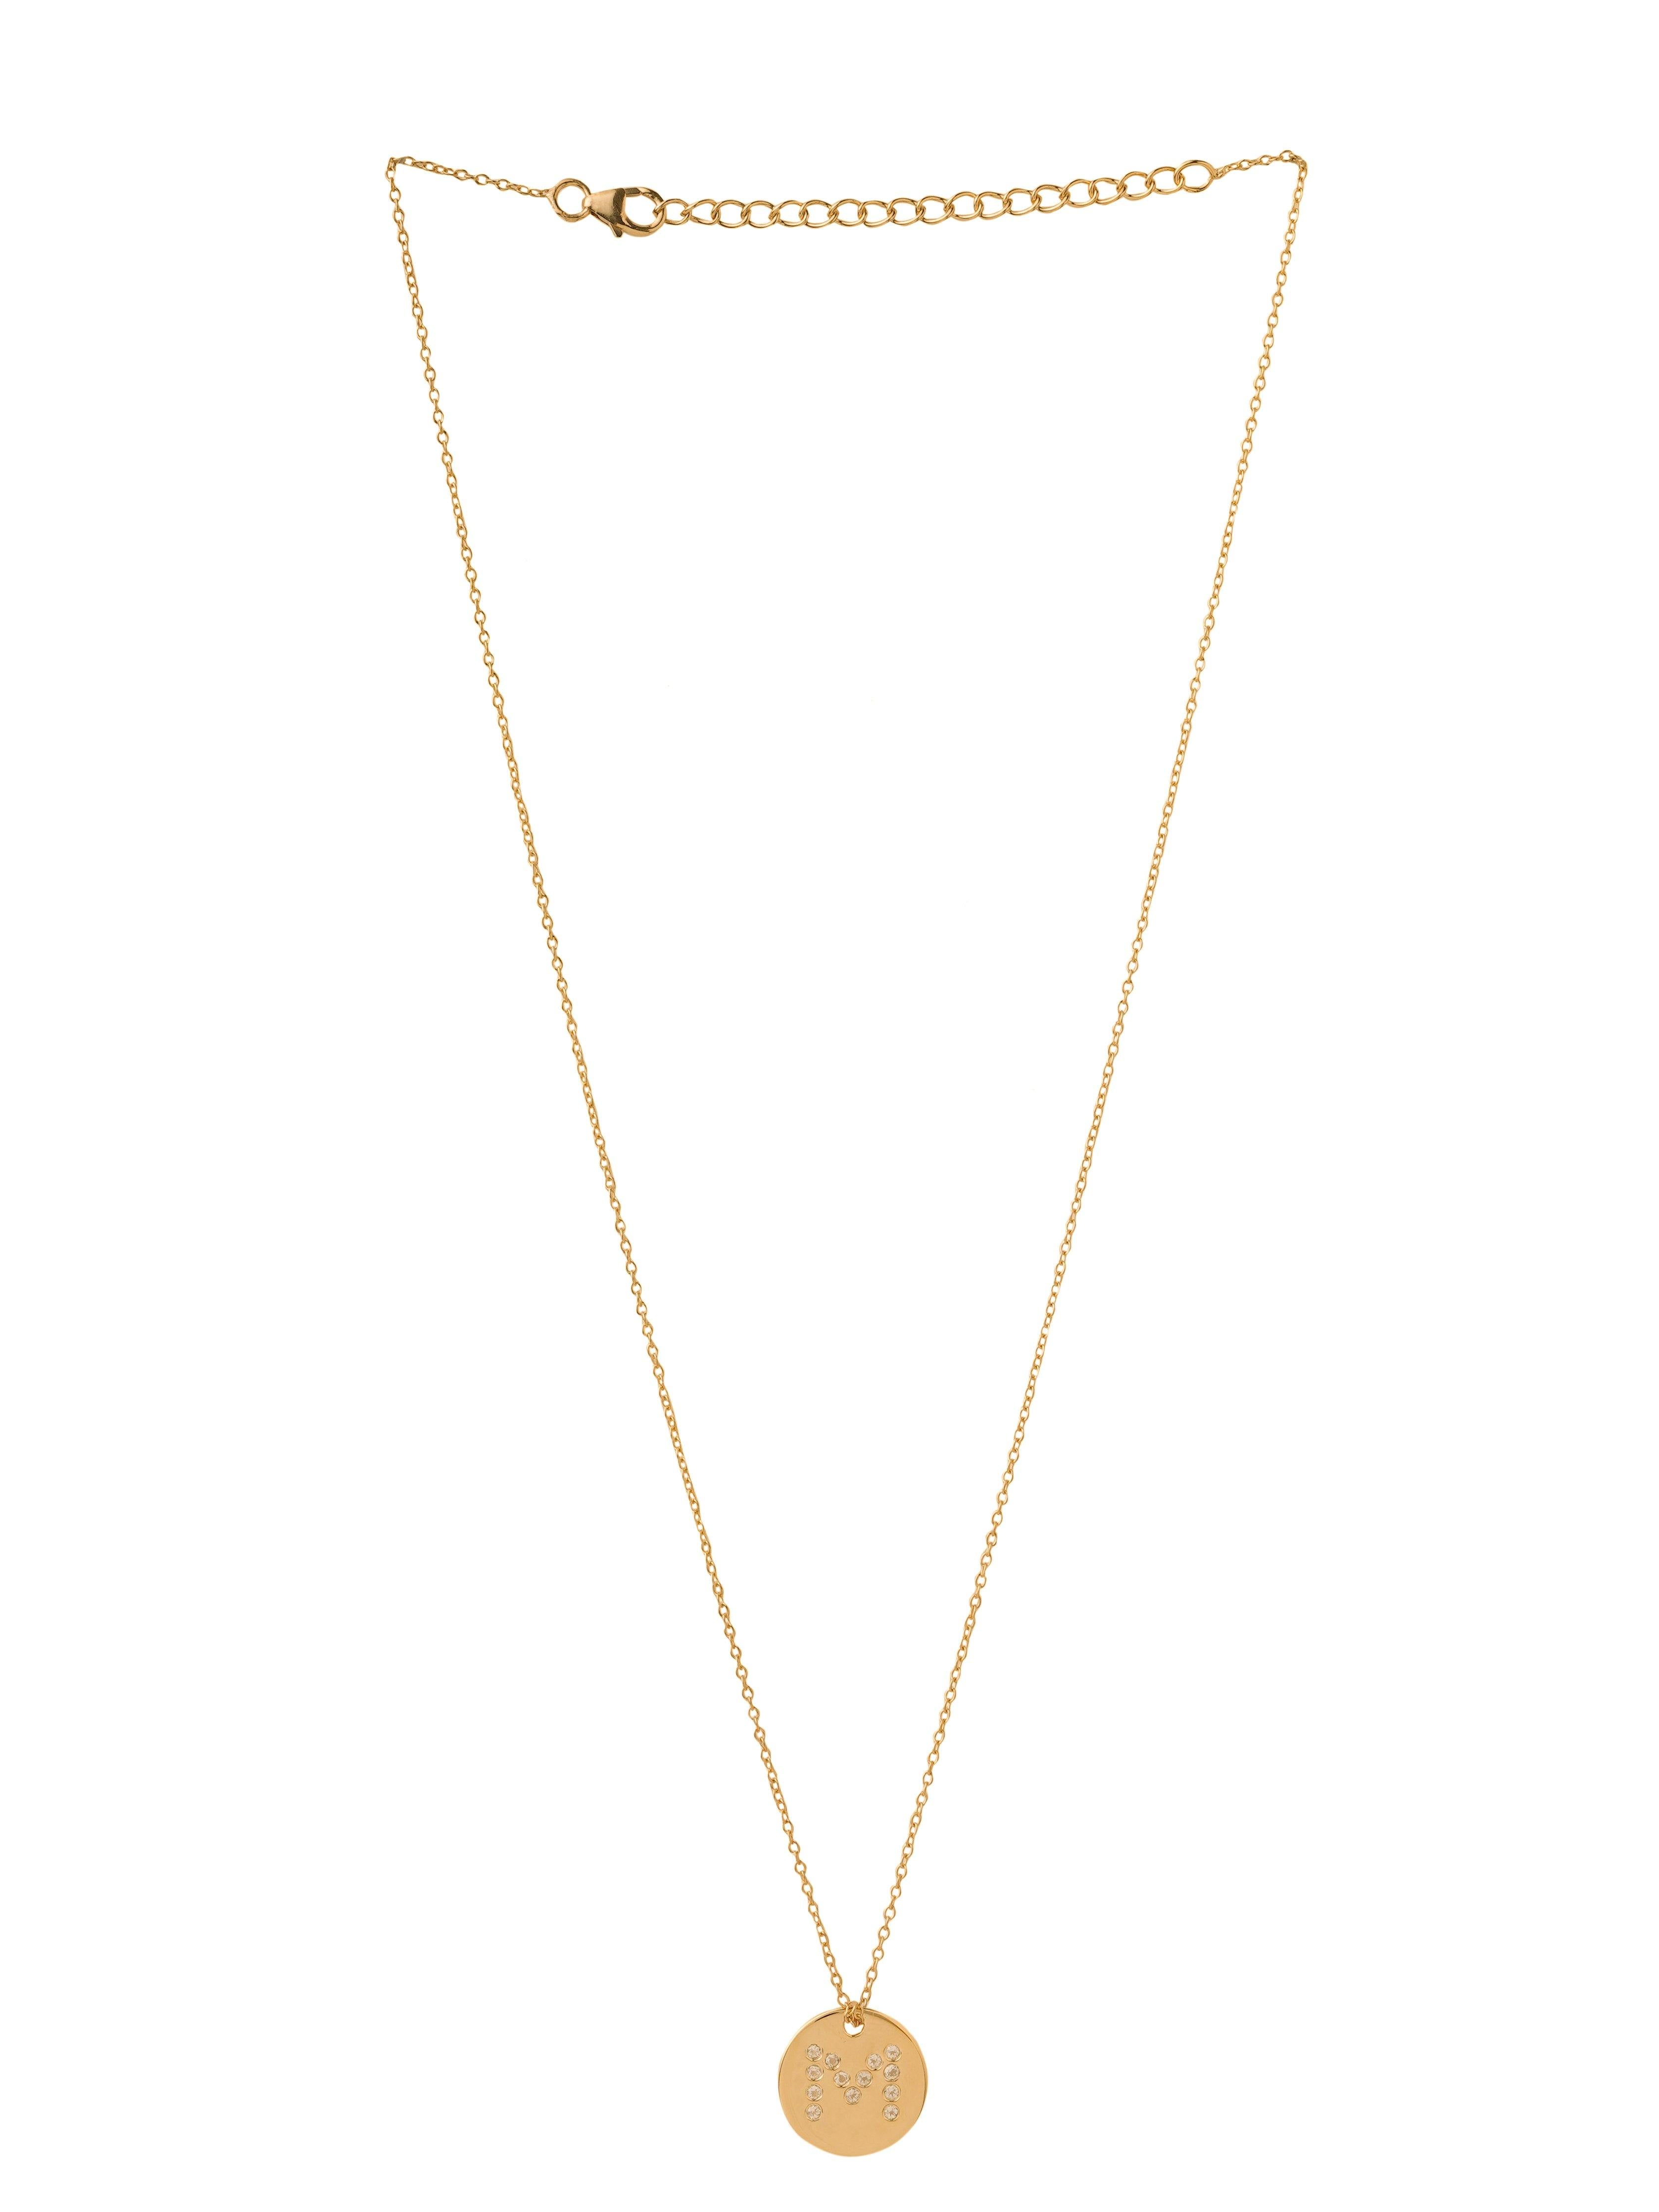 M Mini Chain Pendant White Topaz 925 Sterling Silver Gold Plated Jewelry - YoTreasure